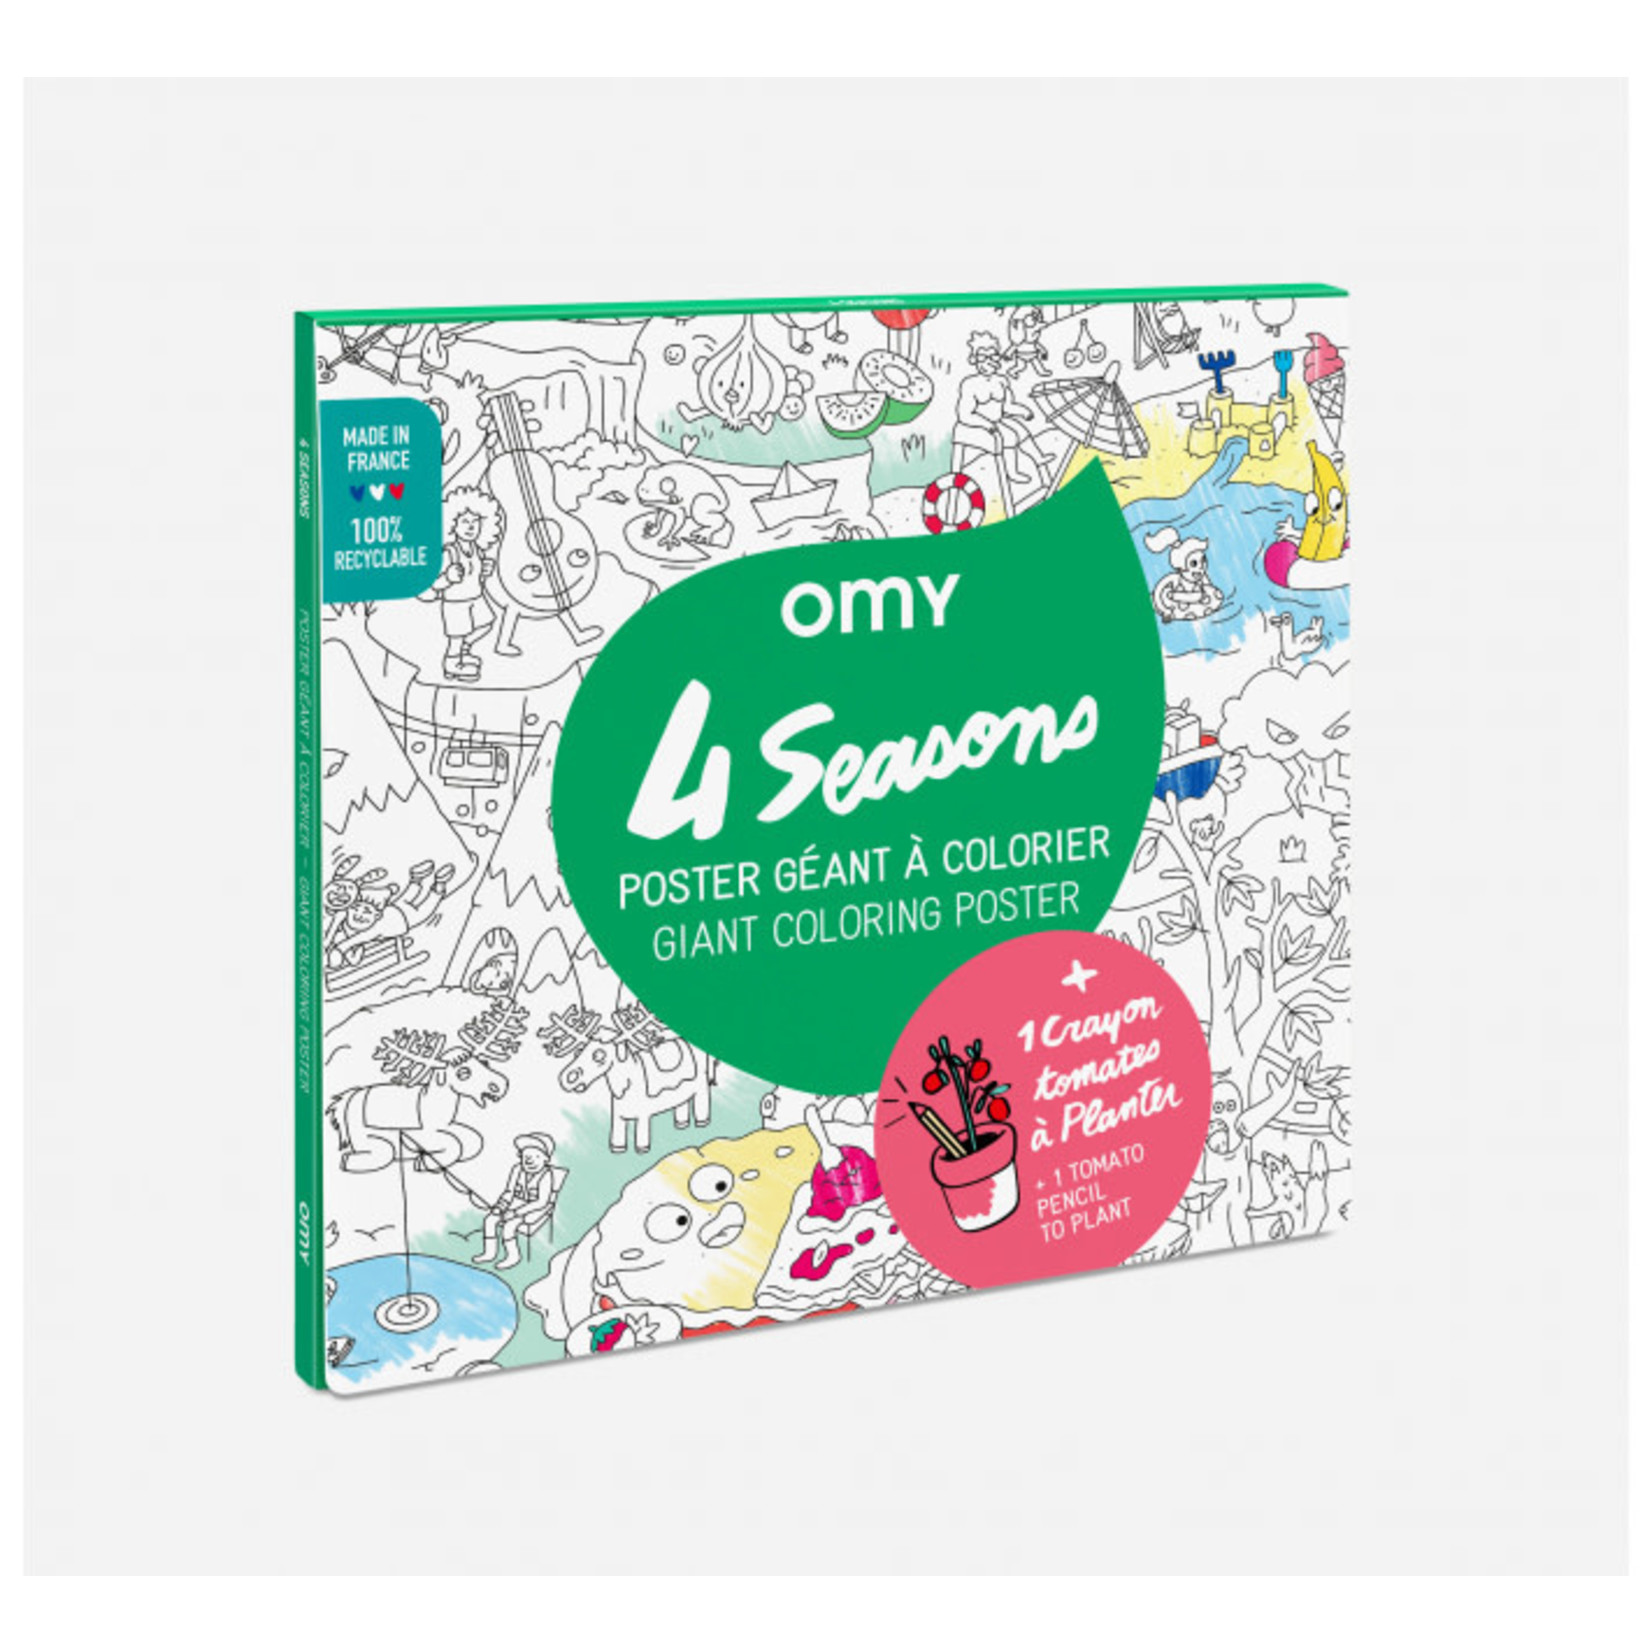 Omy Omy – Poster géant à colorier – 4 saisons + crayon à planter